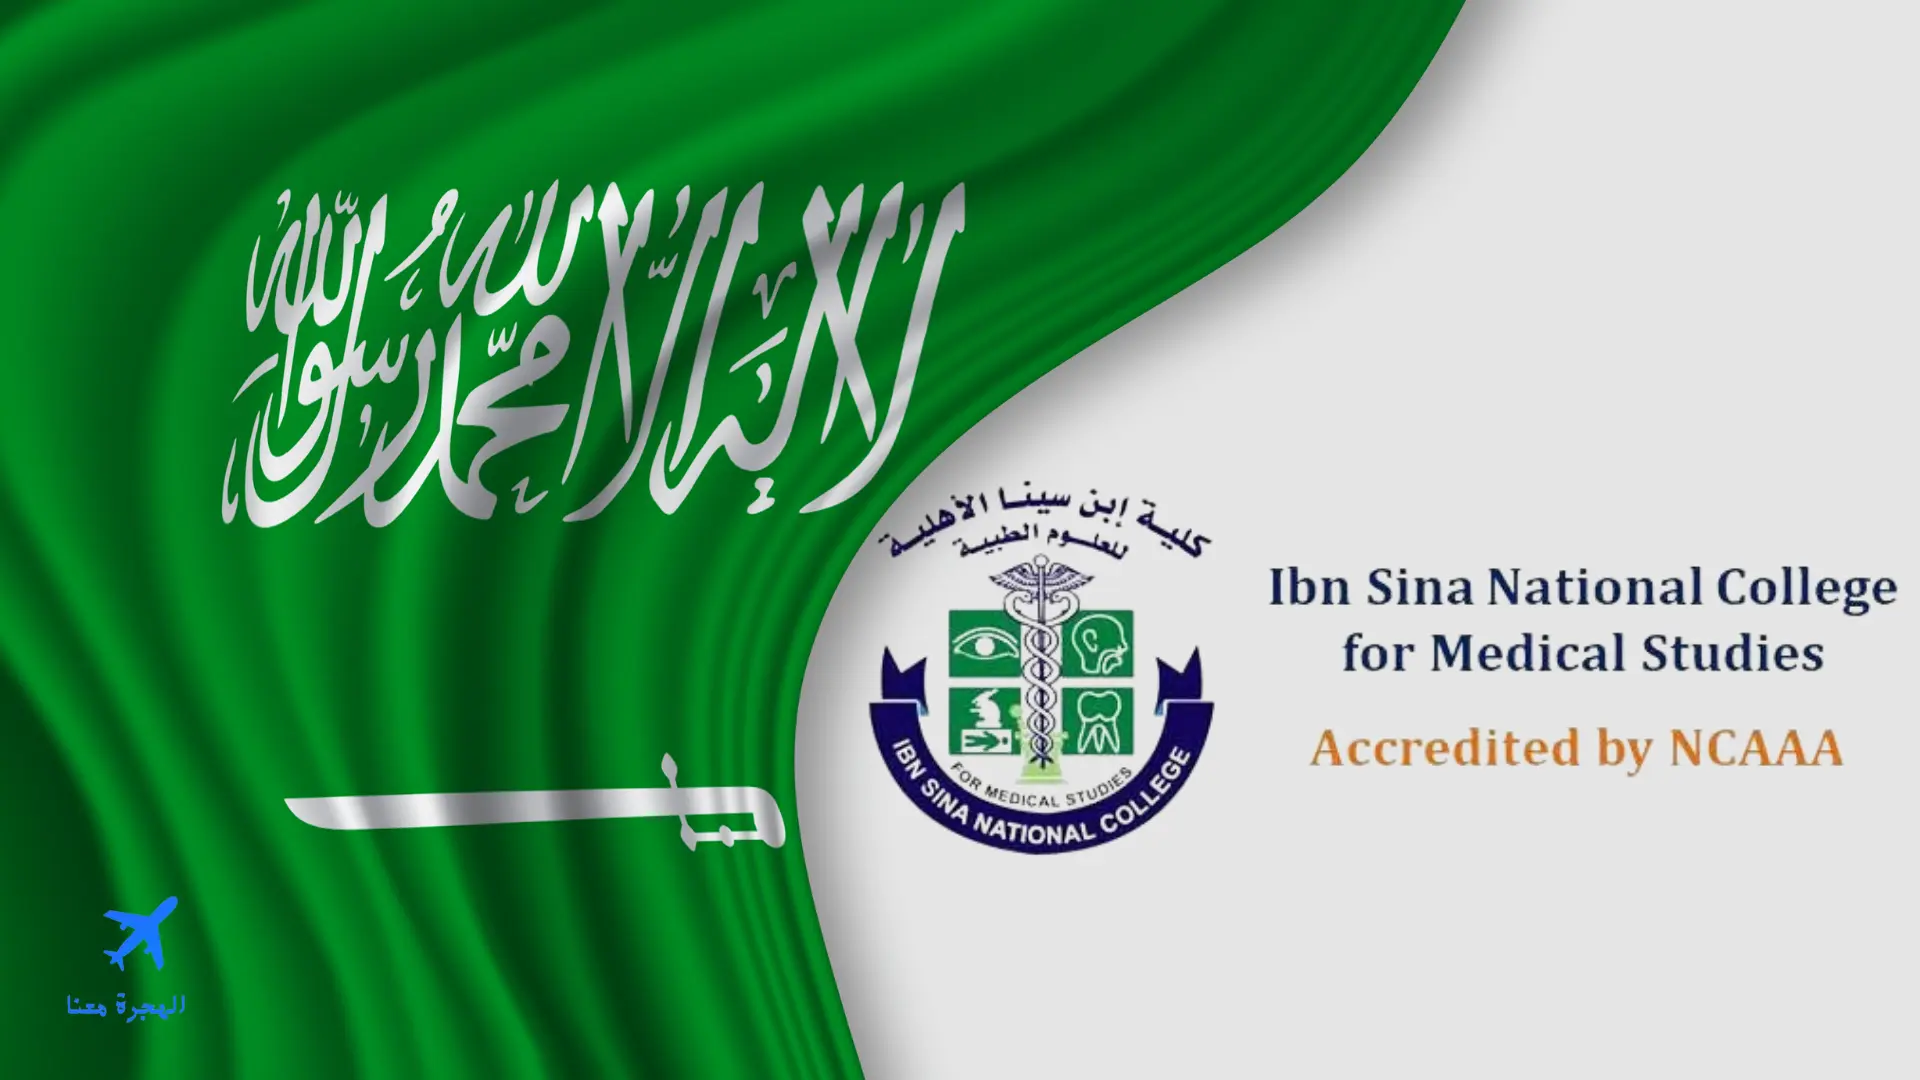 صورة بها علم السعودية وشعار كلية ابن سينا الأهلية